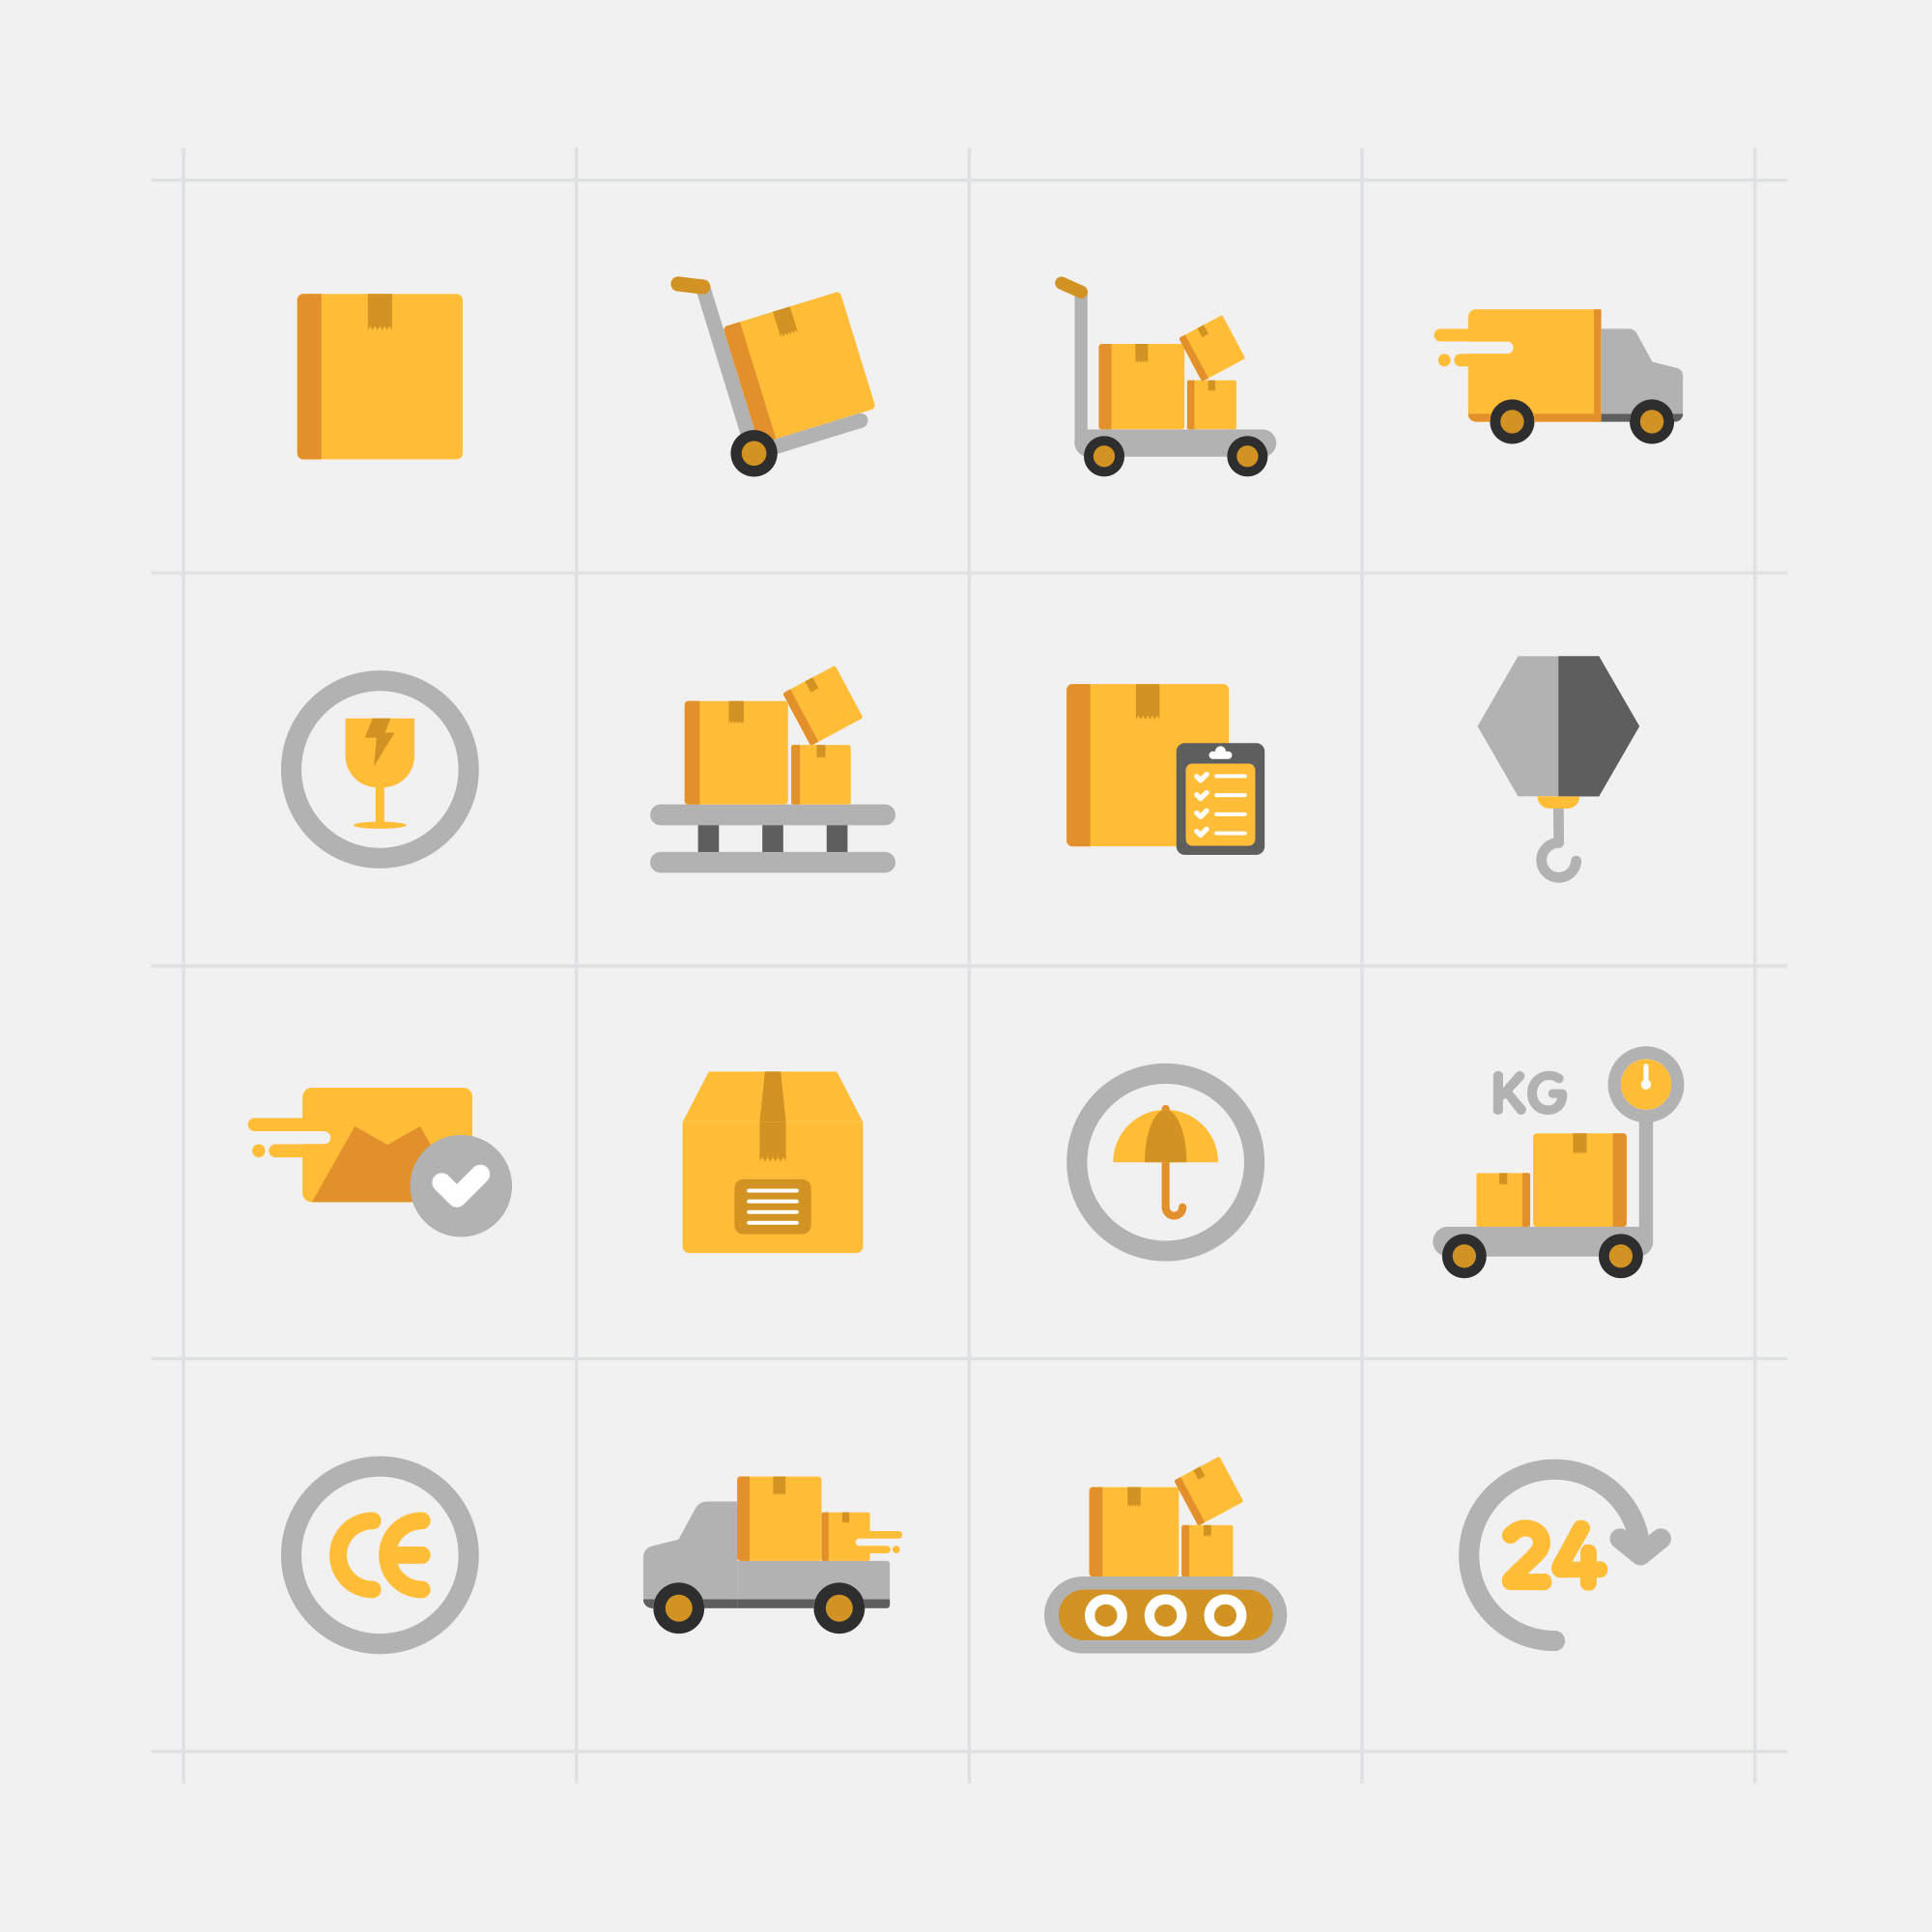 16枚快递配送主题矢量彩色蚂蚁素材精选图标 16 Delivery Vector Icons插图